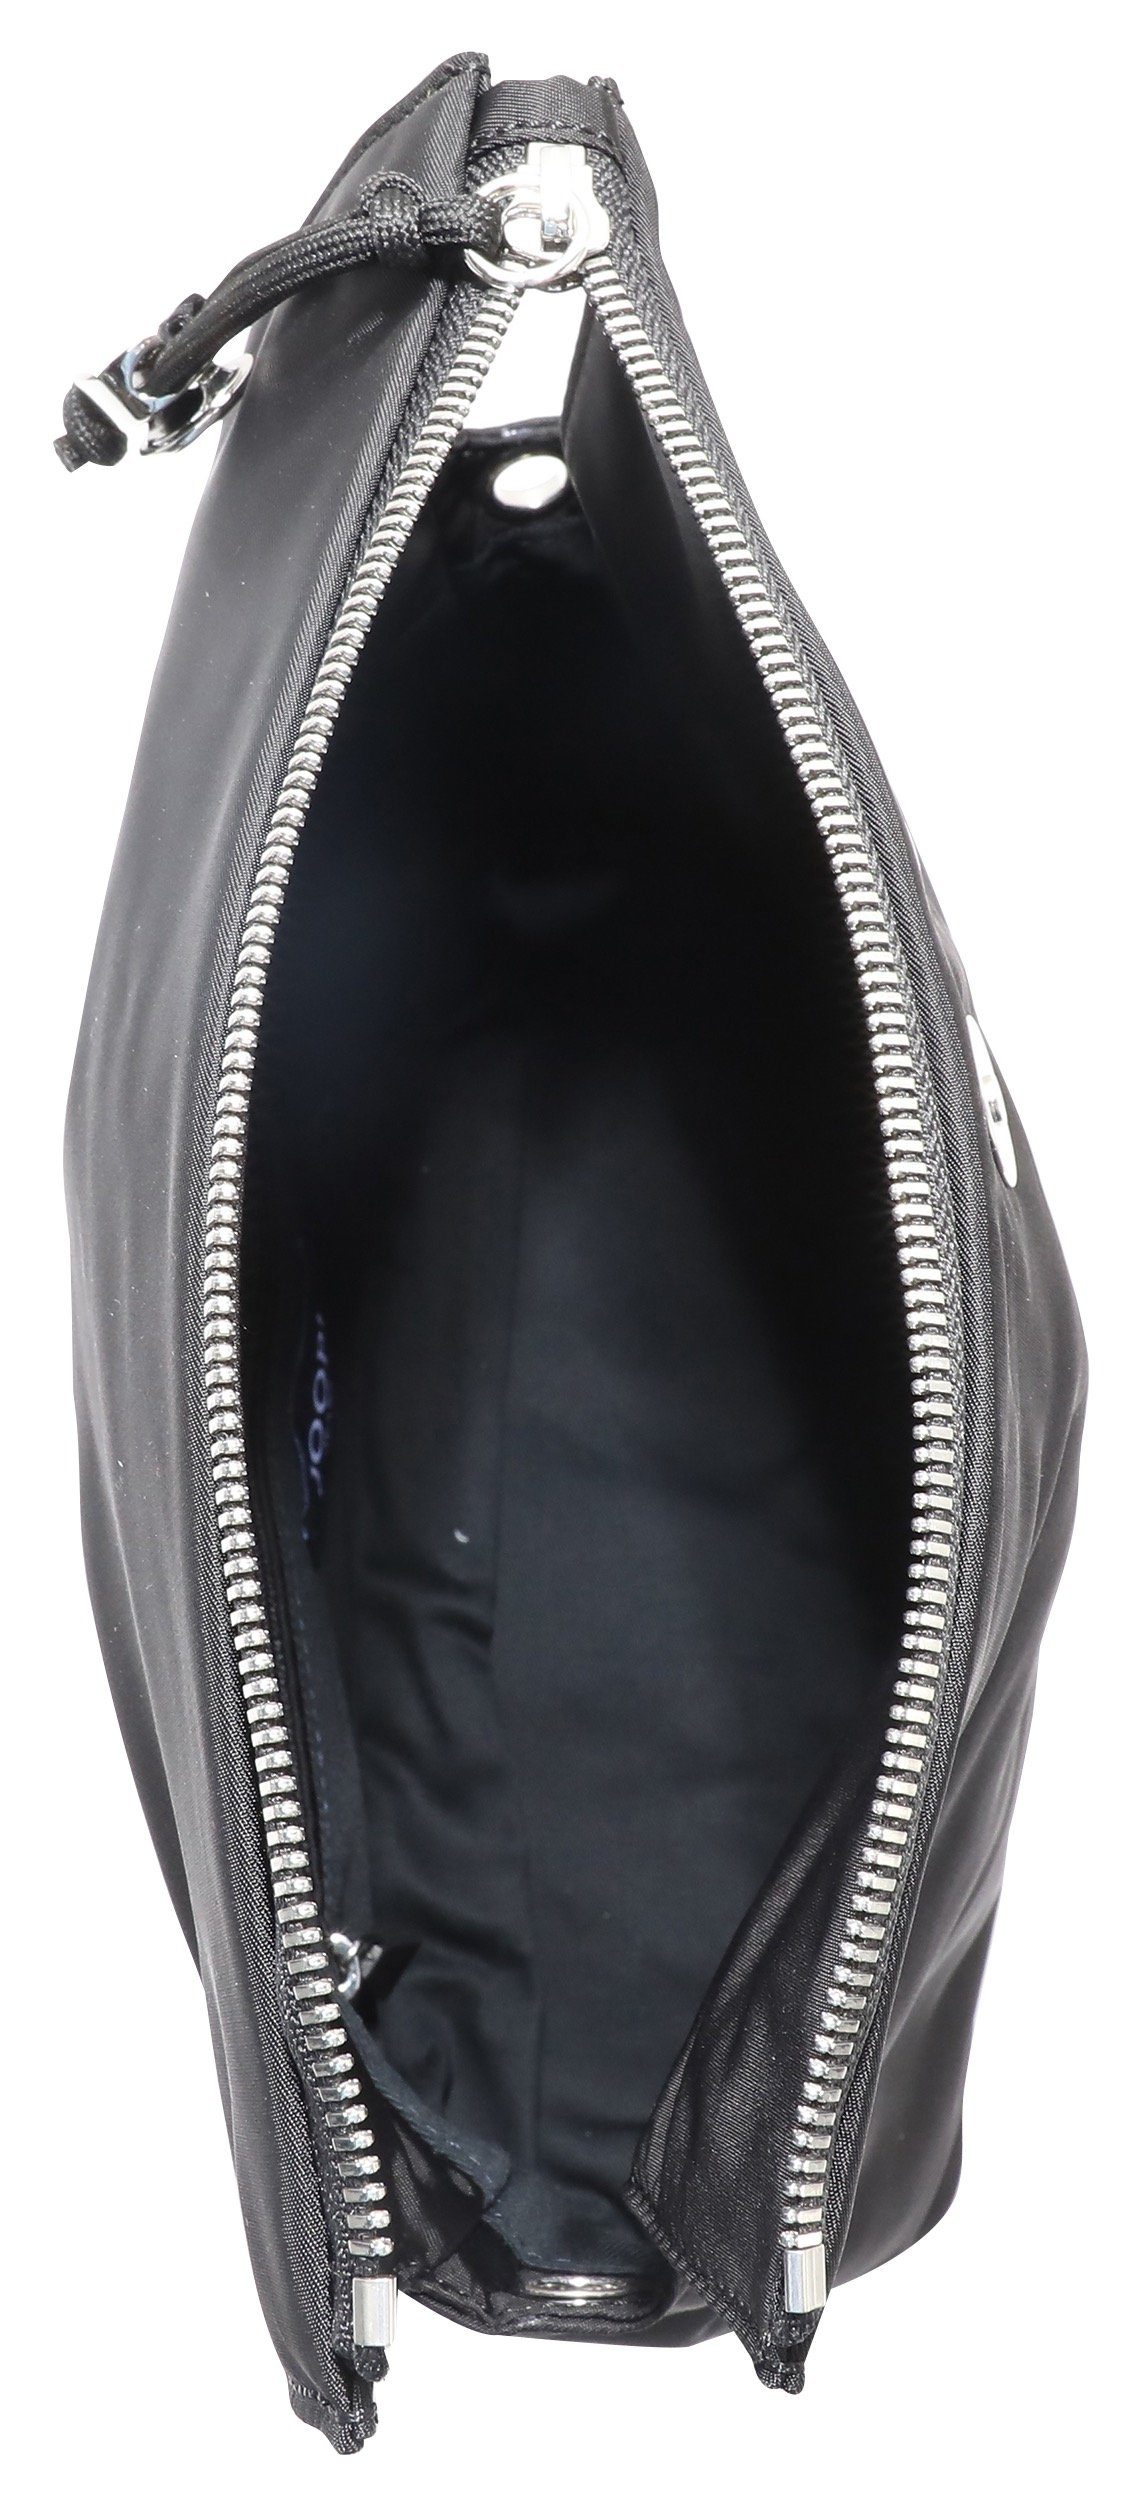 Joop Jeans Umhängetasche auf Logo shoulderbag Umhängeriemen dem shz, schwarz Schriftzug lani lietissimo mit